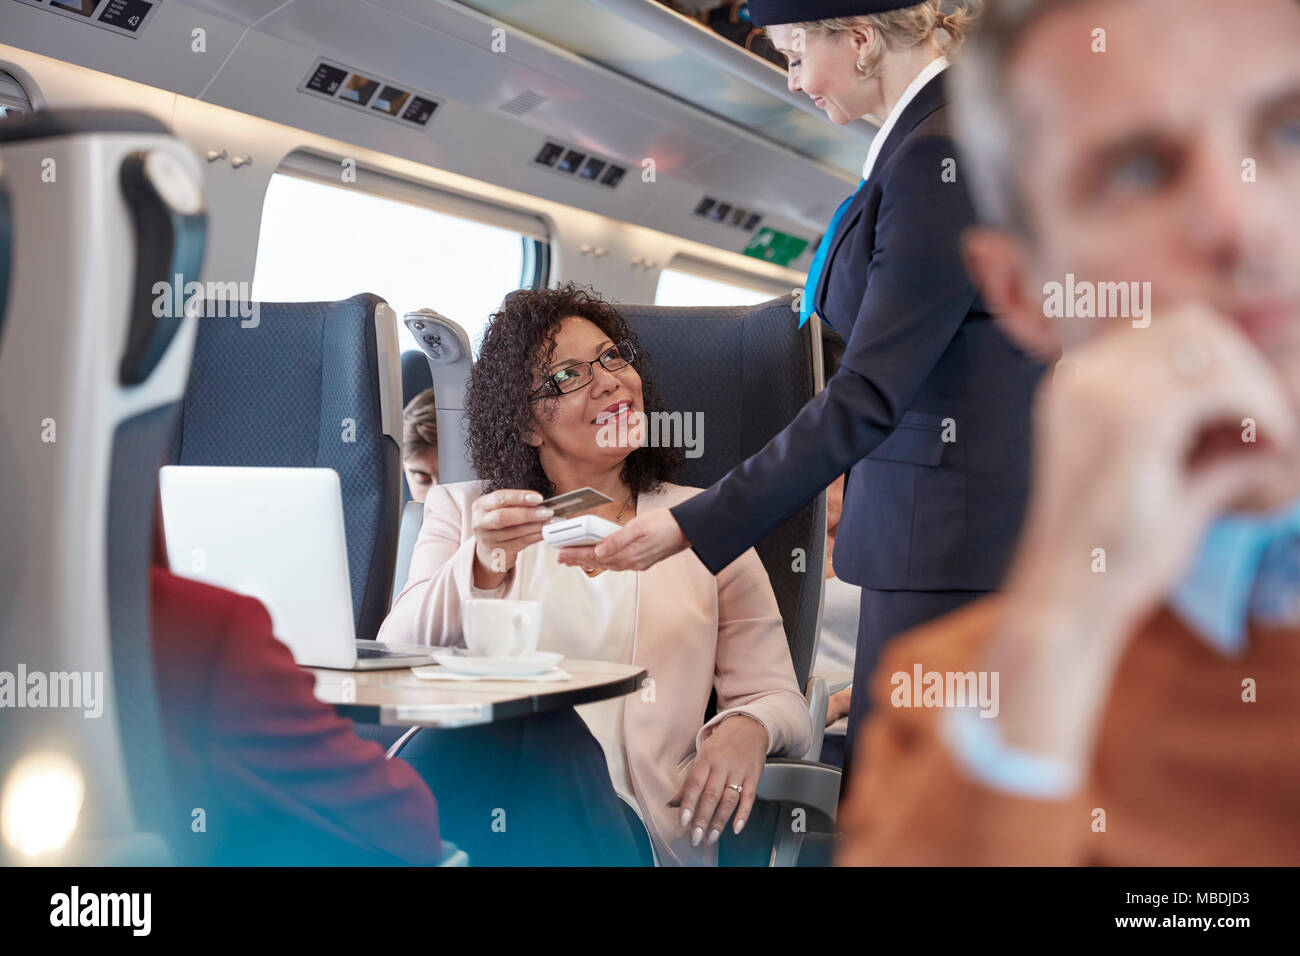 Donna con carta di credito utilizzando il pagamento senza contatto, prestando attendant sul treno passeggeri Foto Stock